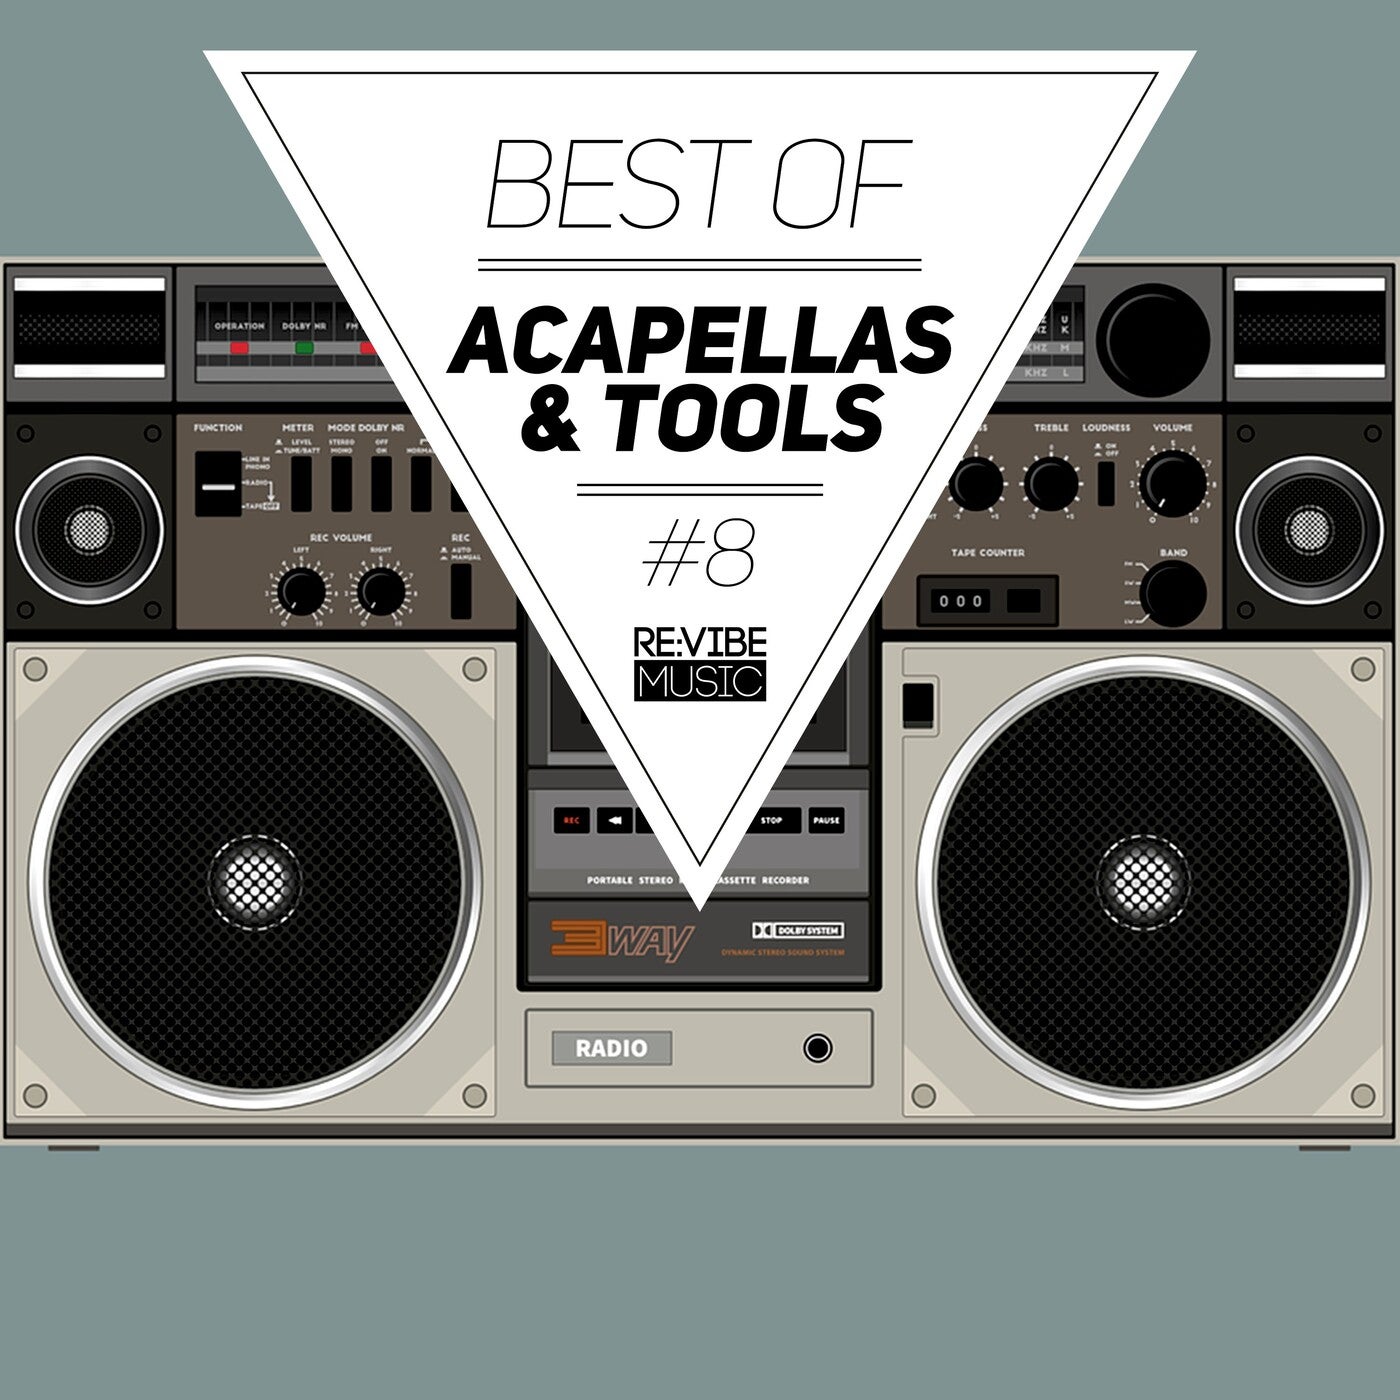 Best of Acapellas & Tools, Vol. 8